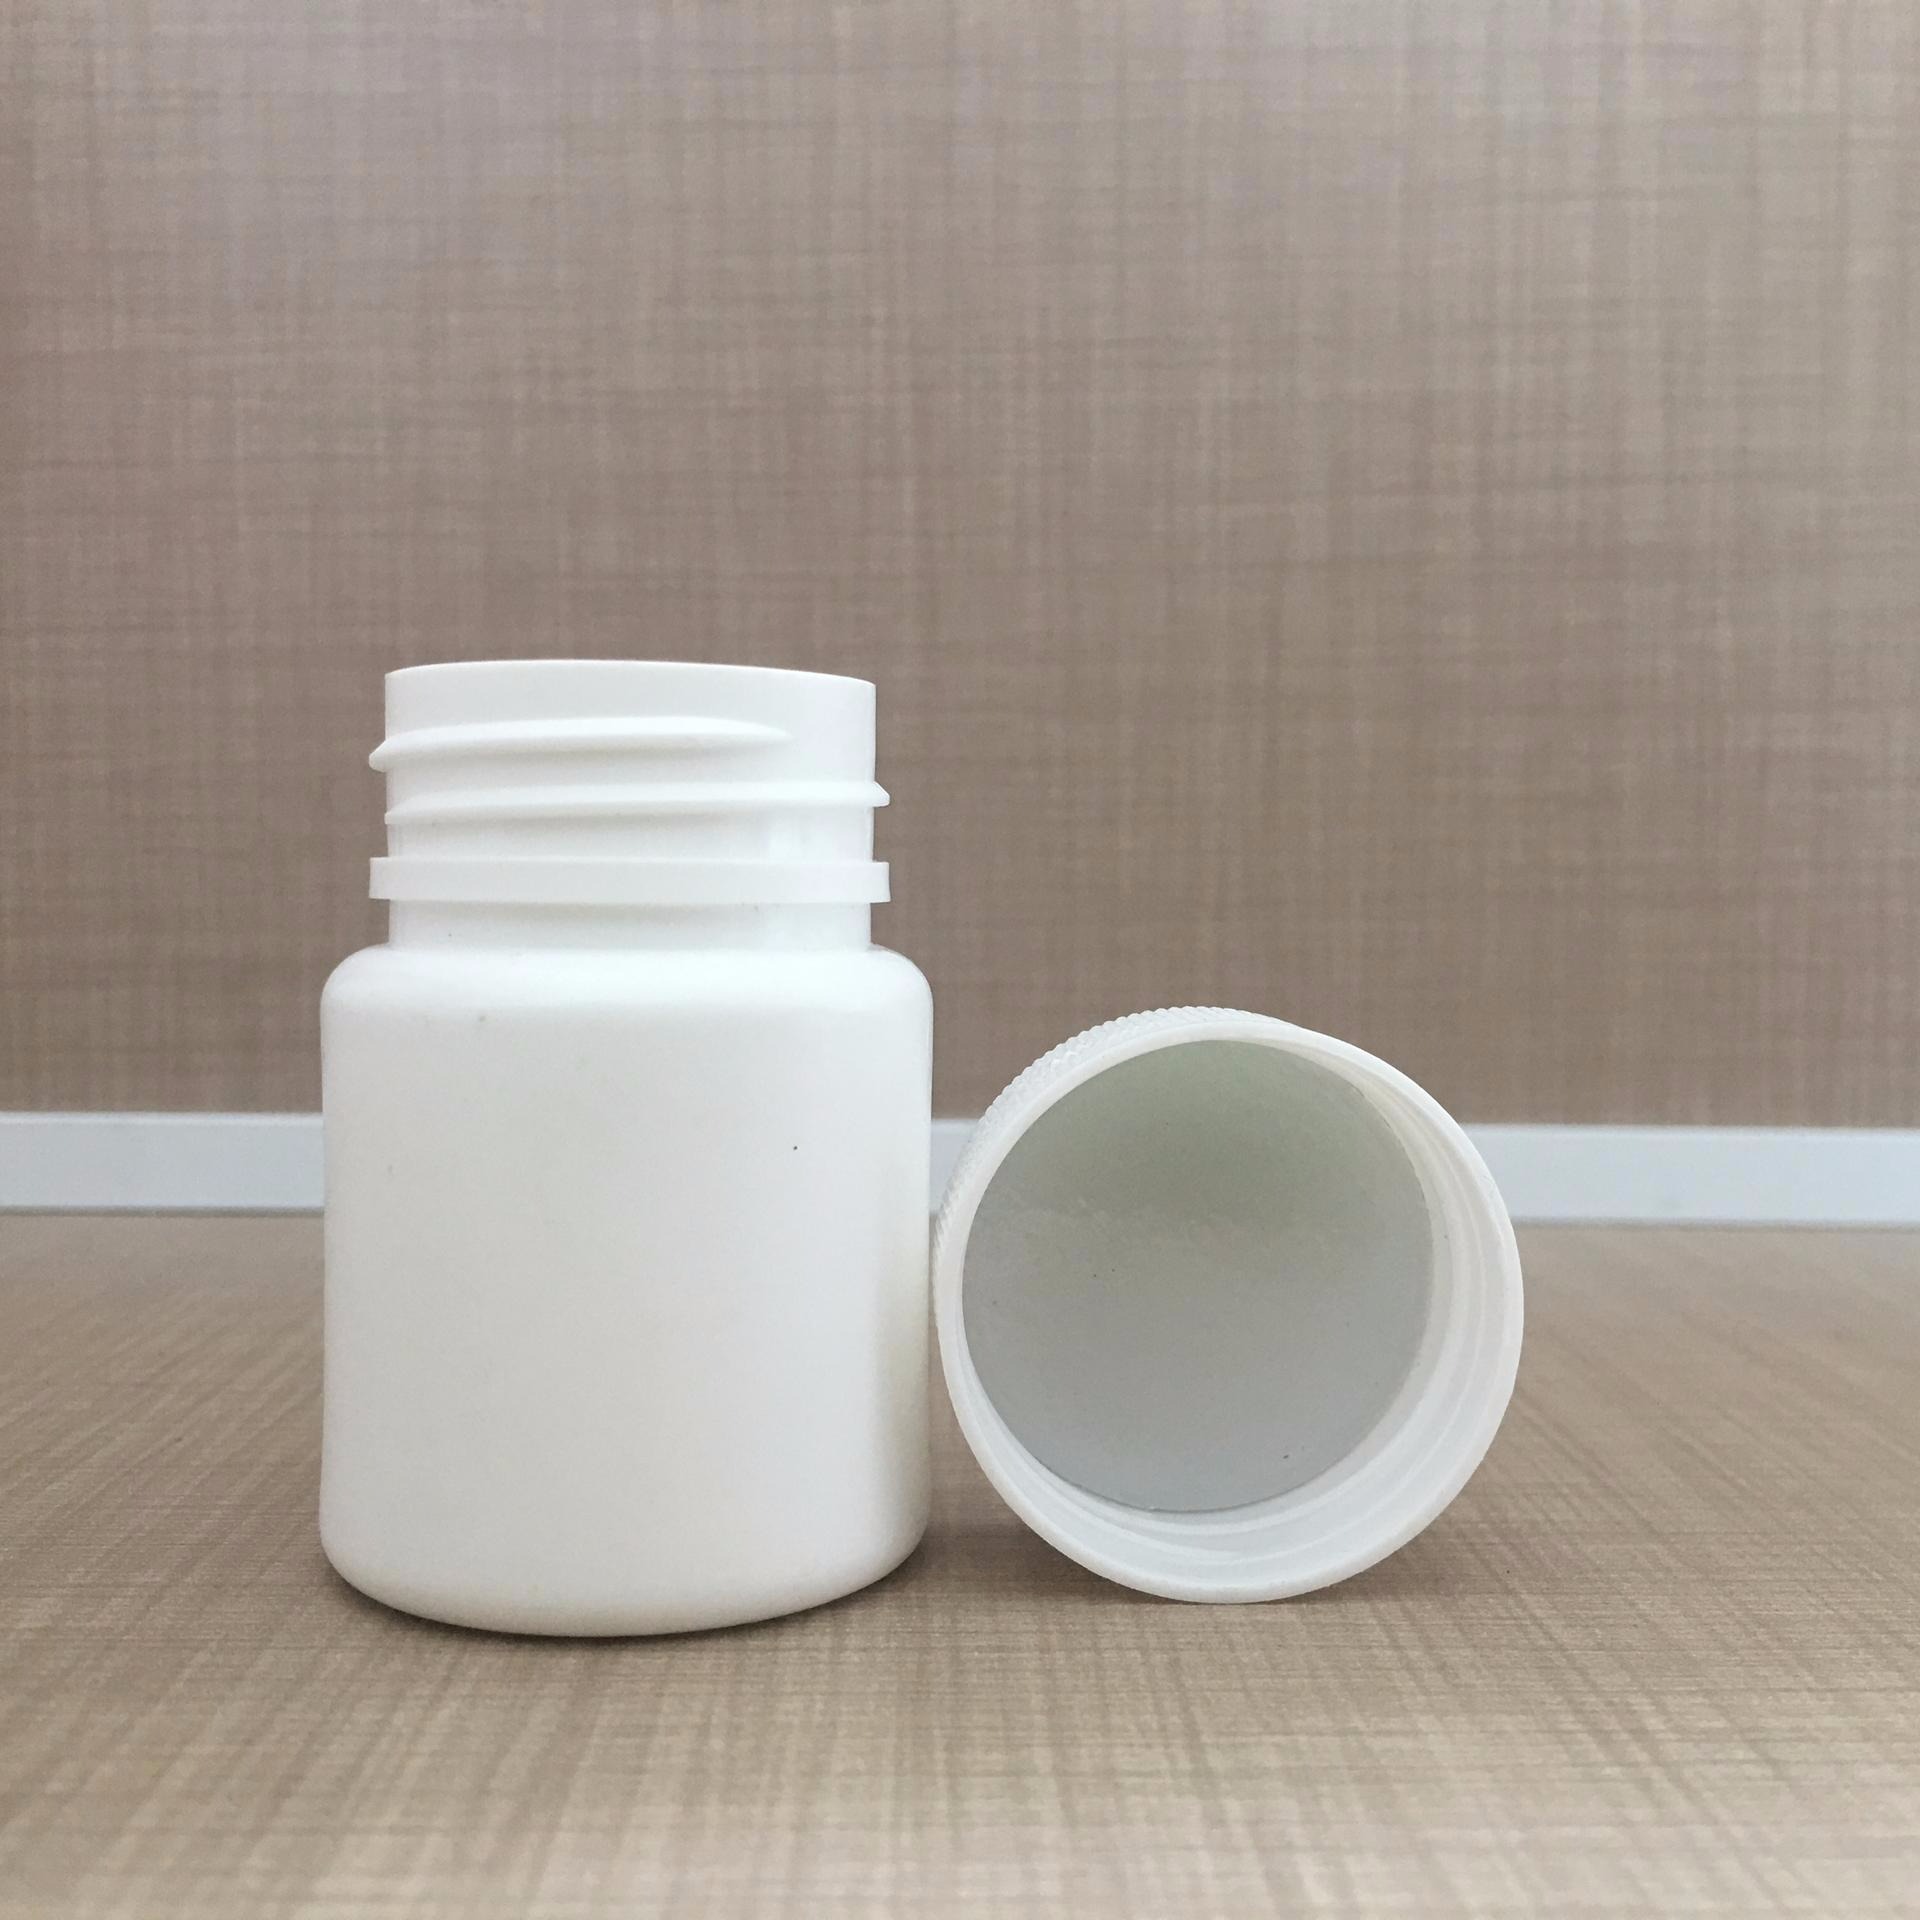 沧州红星厂家供应 150g固体塑料瓶 小塑料瓶  白色塑料瓶  胶囊片剂分装瓶图片